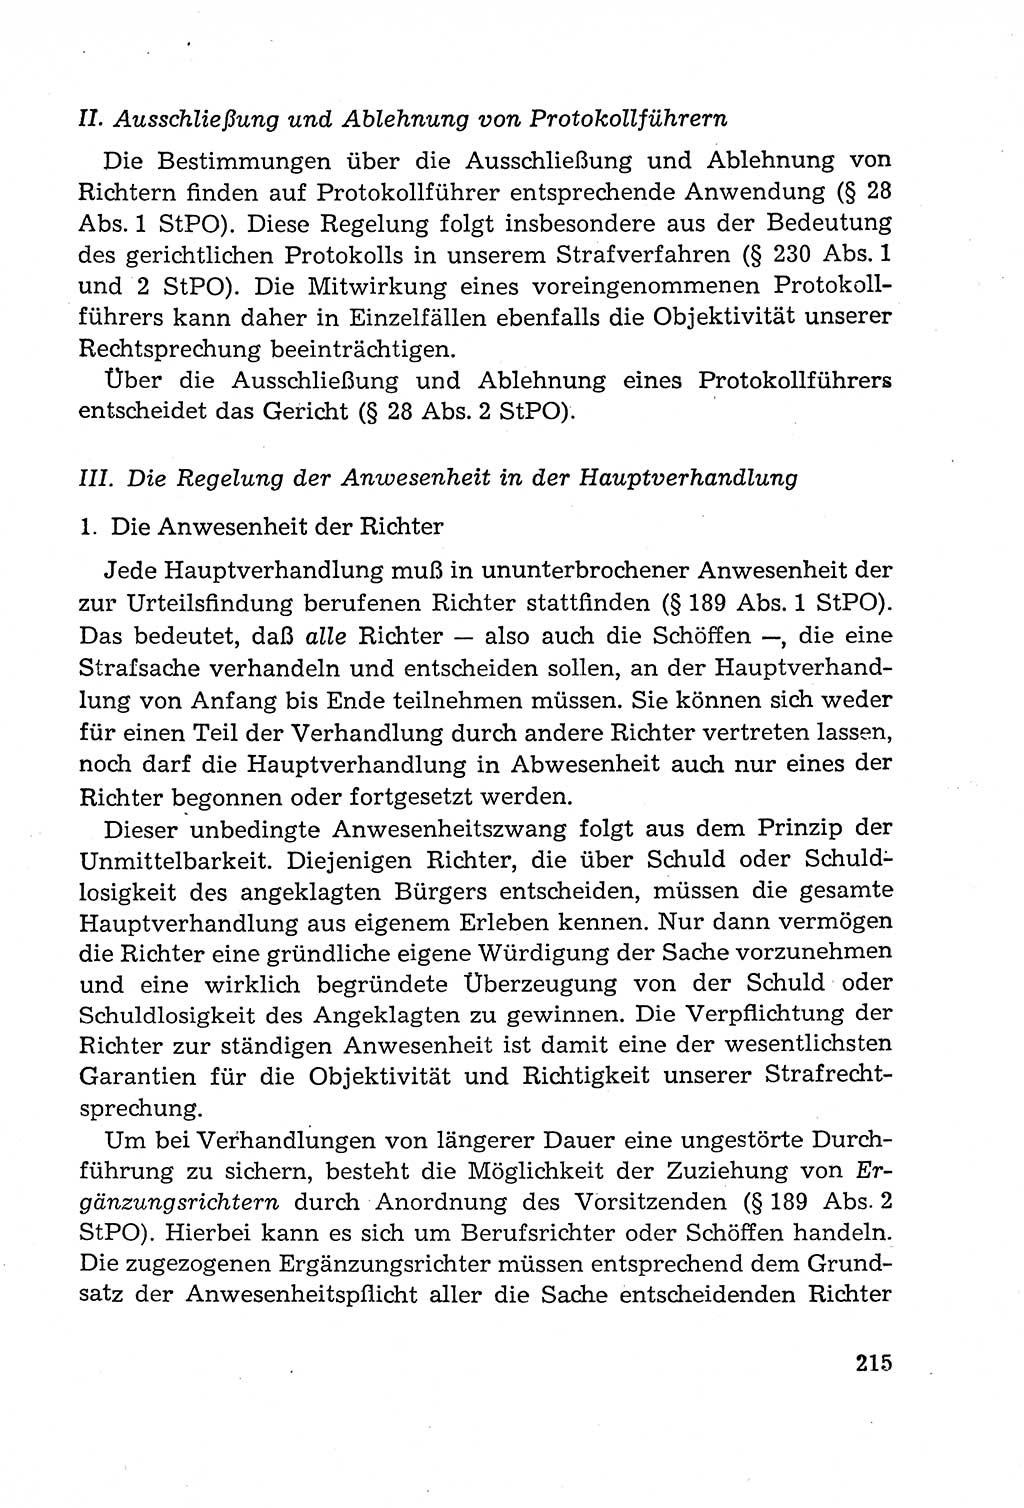 Leitfaden des Strafprozeßrechts der Deutschen Demokratischen Republik (DDR) 1959, Seite 215 (LF StPR DDR 1959, S. 215)